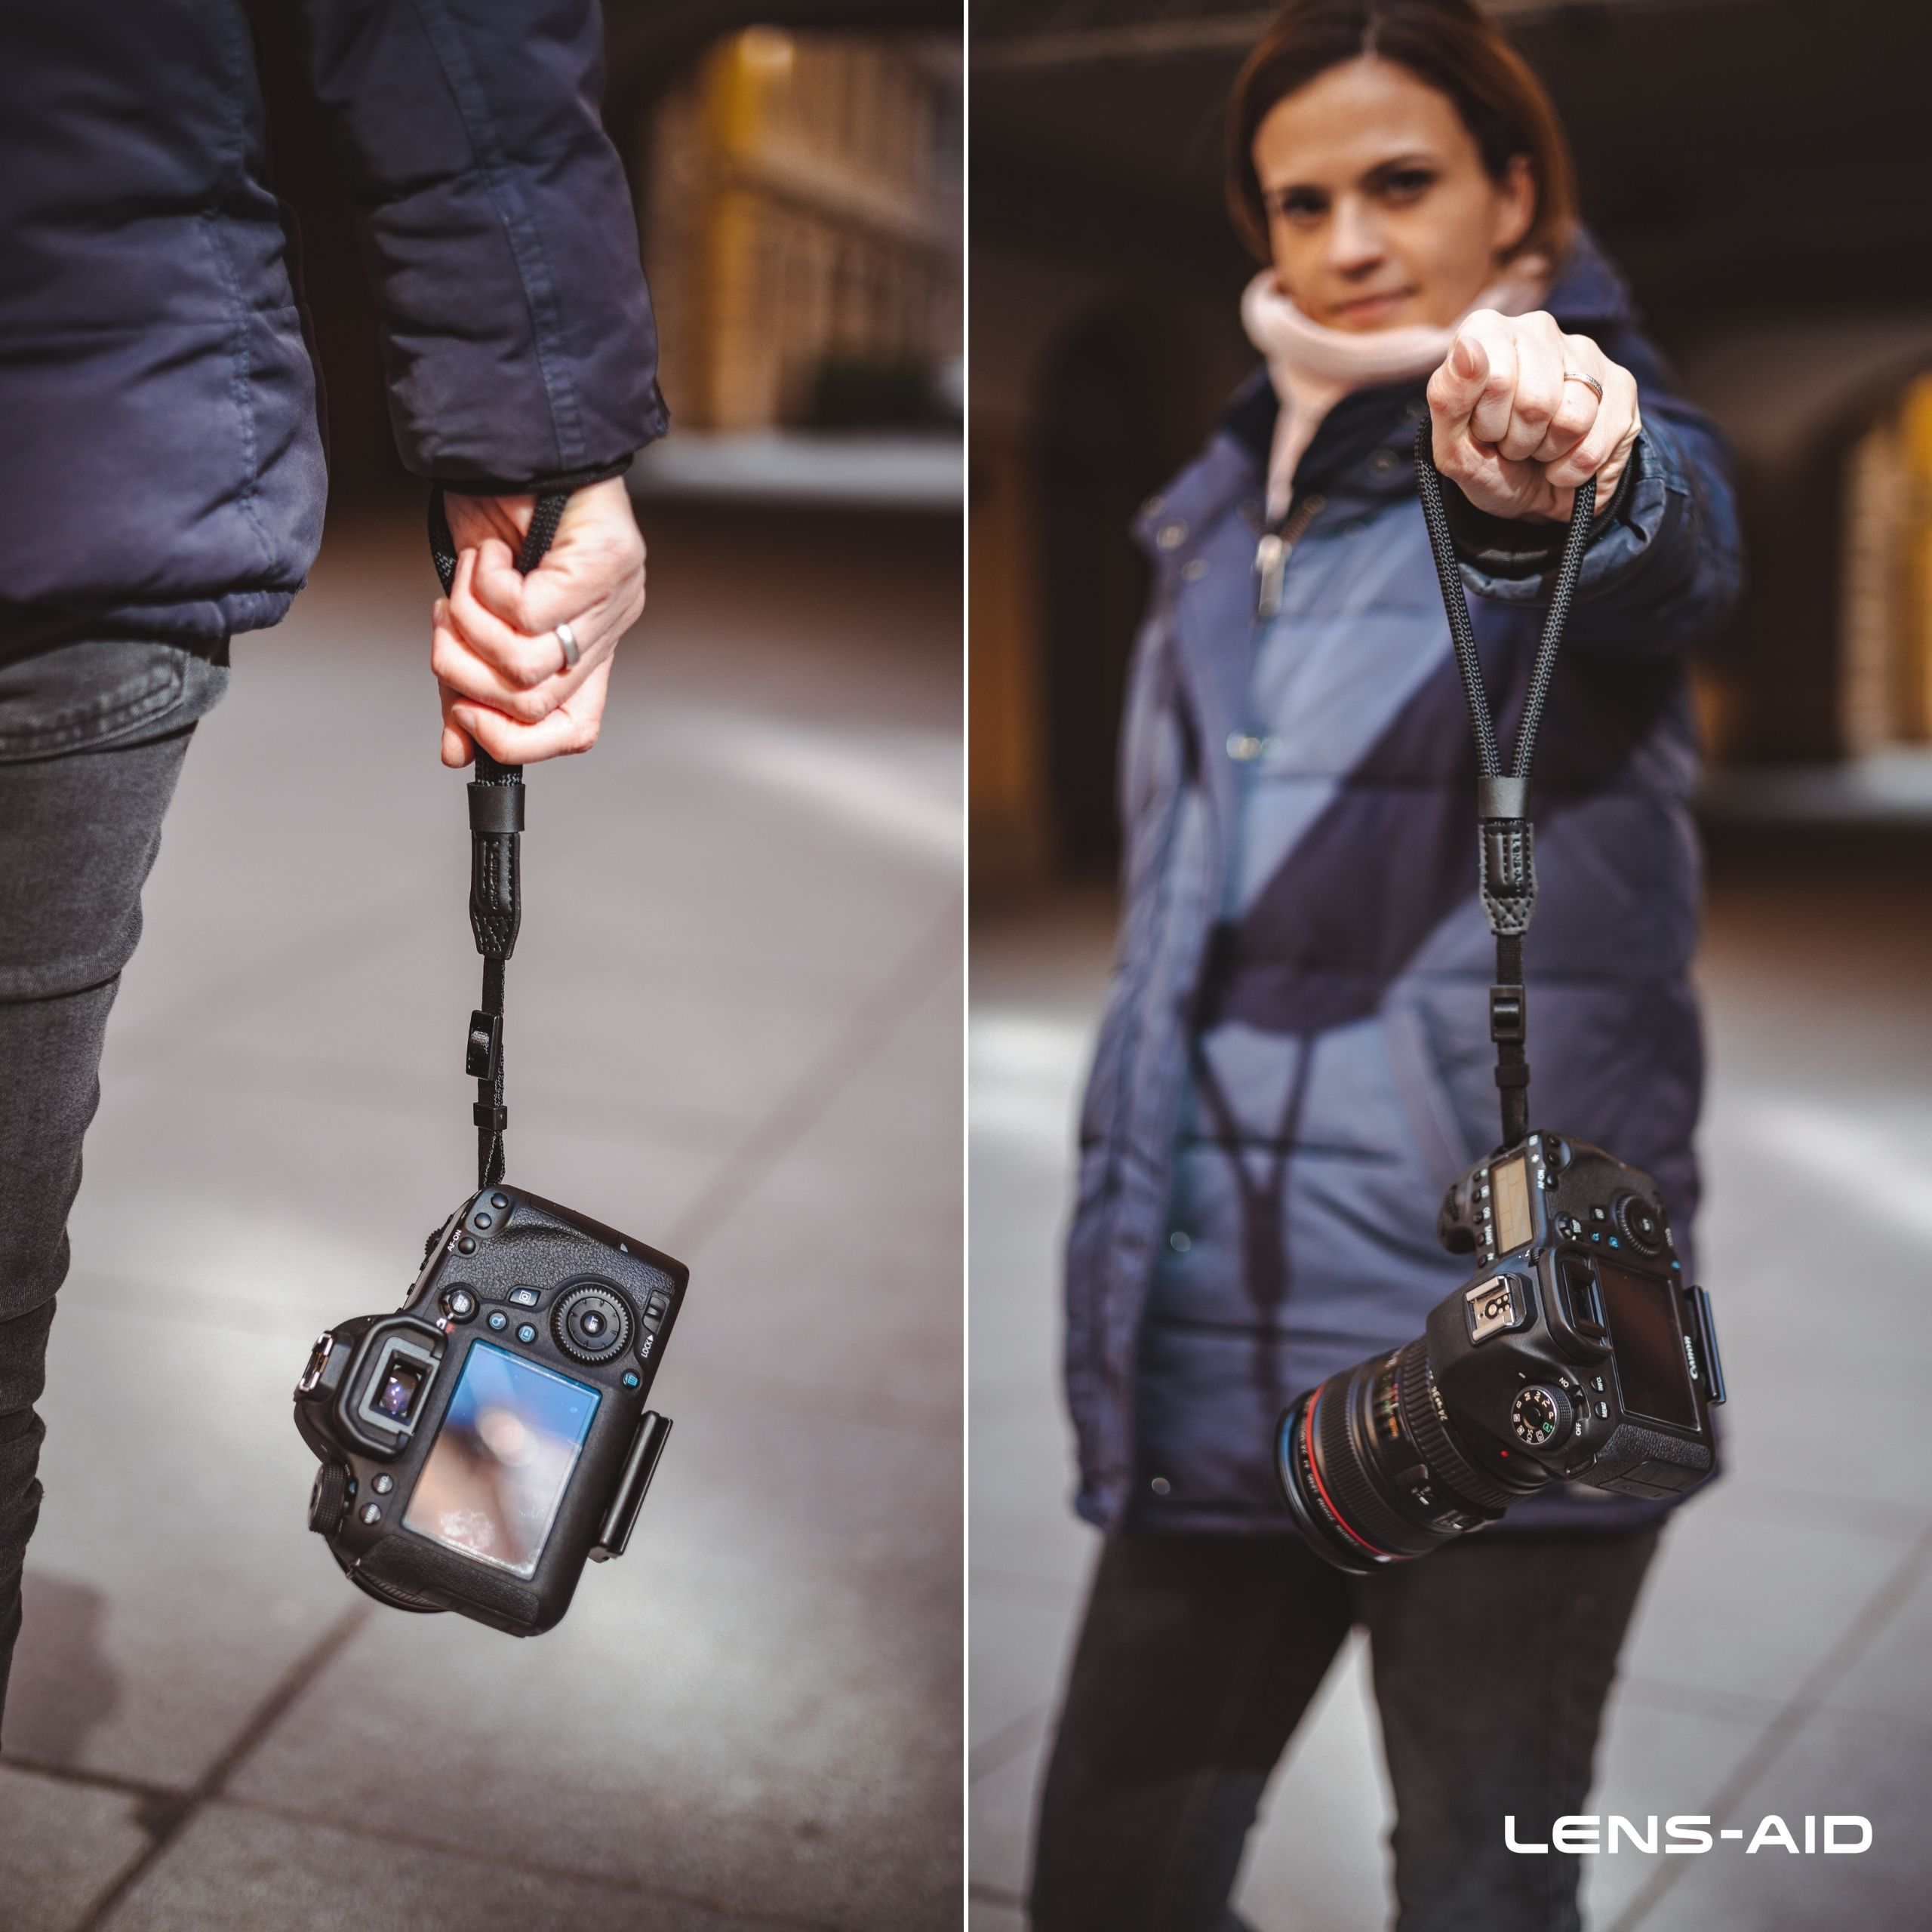 LENS-AID Kamera Handschlaufe in Seil-Optik Nikon, für Canon, Leica Olympus, Sony schmale passend oder Fujifilm, kleine Schwarz, Alpha, für Ösen, Handschlaufe